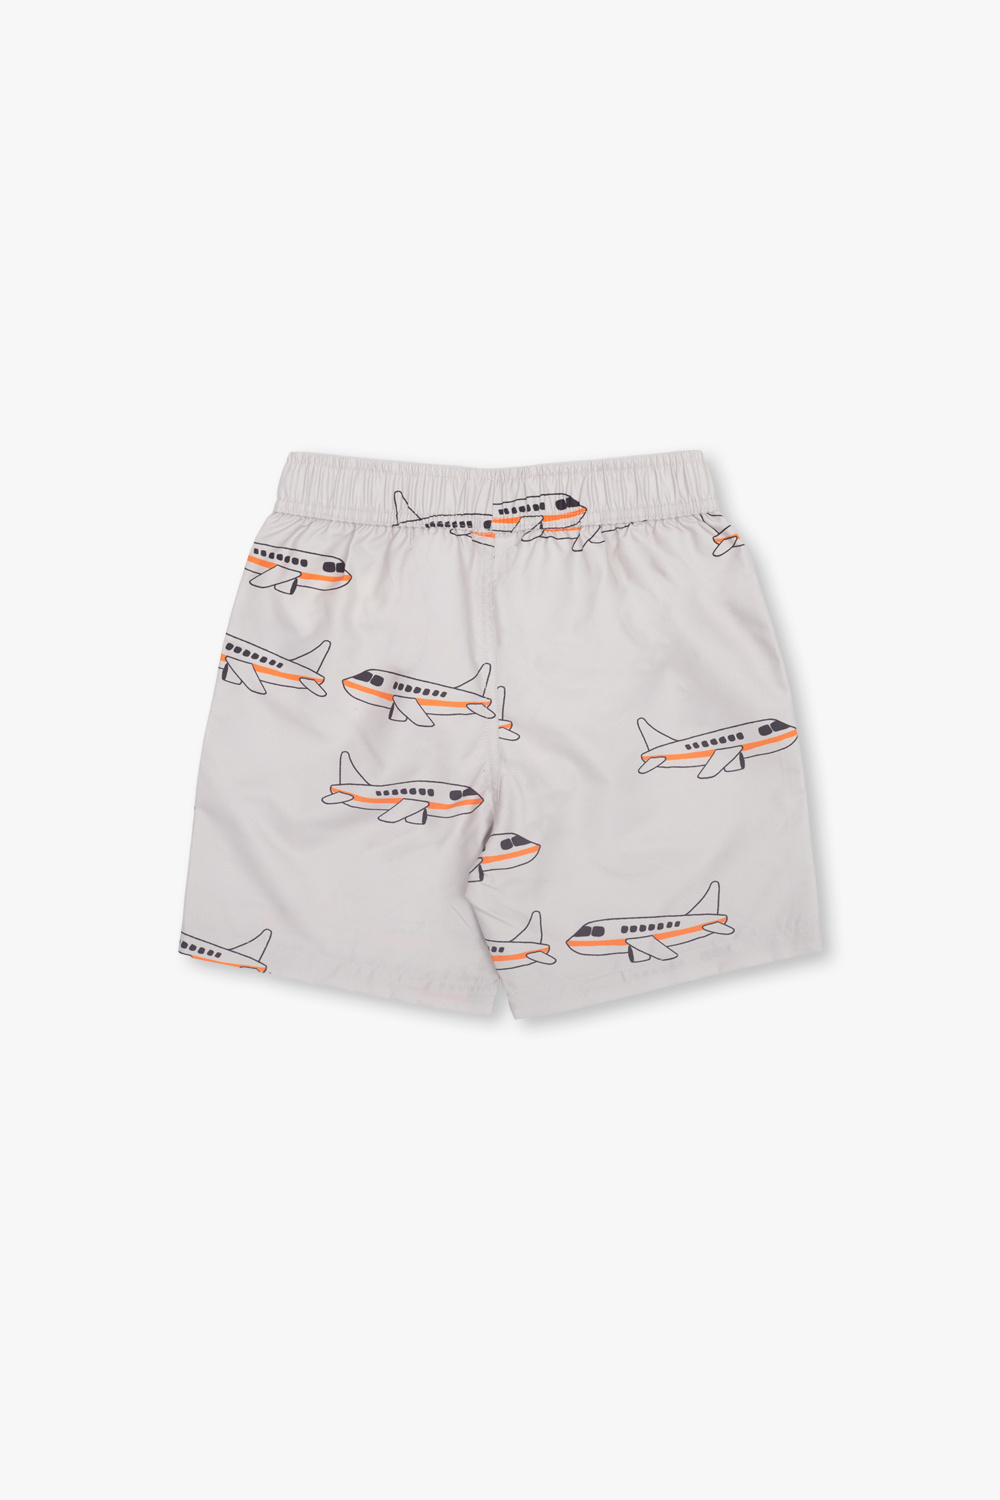 Mini Rodini Swimming shorts